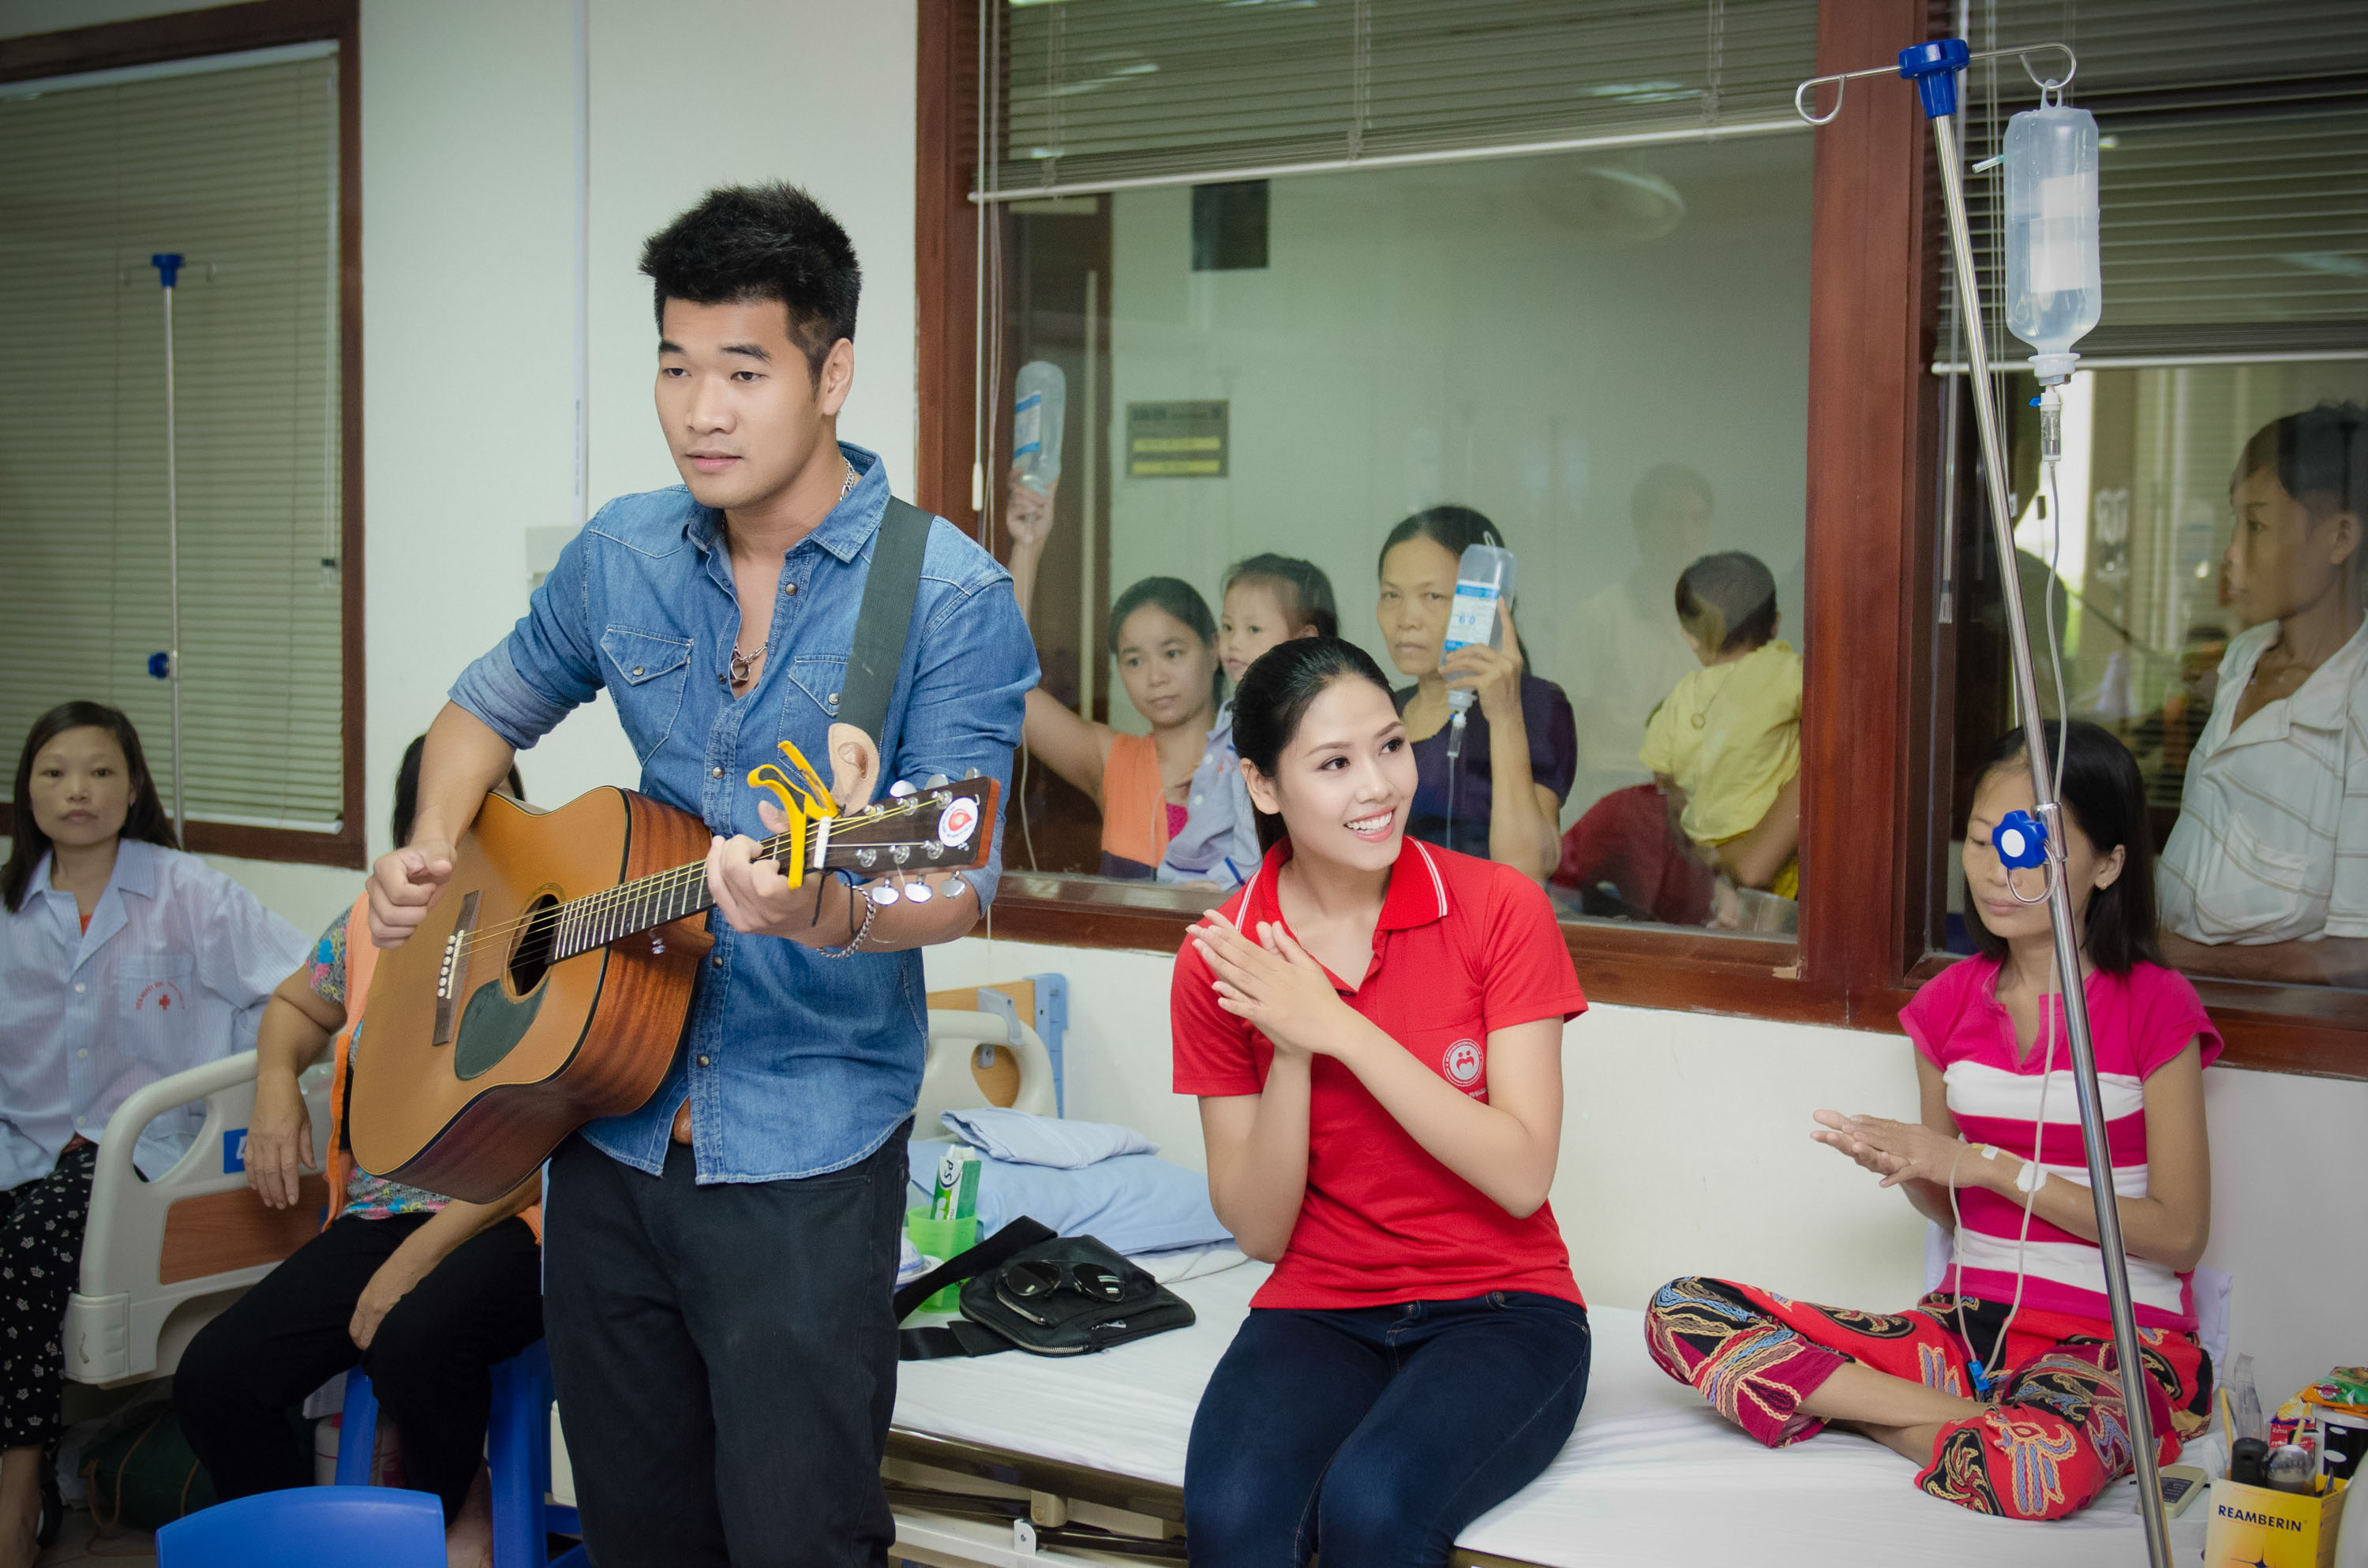  Sau đó, khi thăm các bệnh nhân nhí đang truyền dịch để đẩy sắt thừa ra thì Tạ QuangThắng cũng gần như khó hát tiếp được nên đàn ghi ta để Nguyễn Thị Loan hát. 